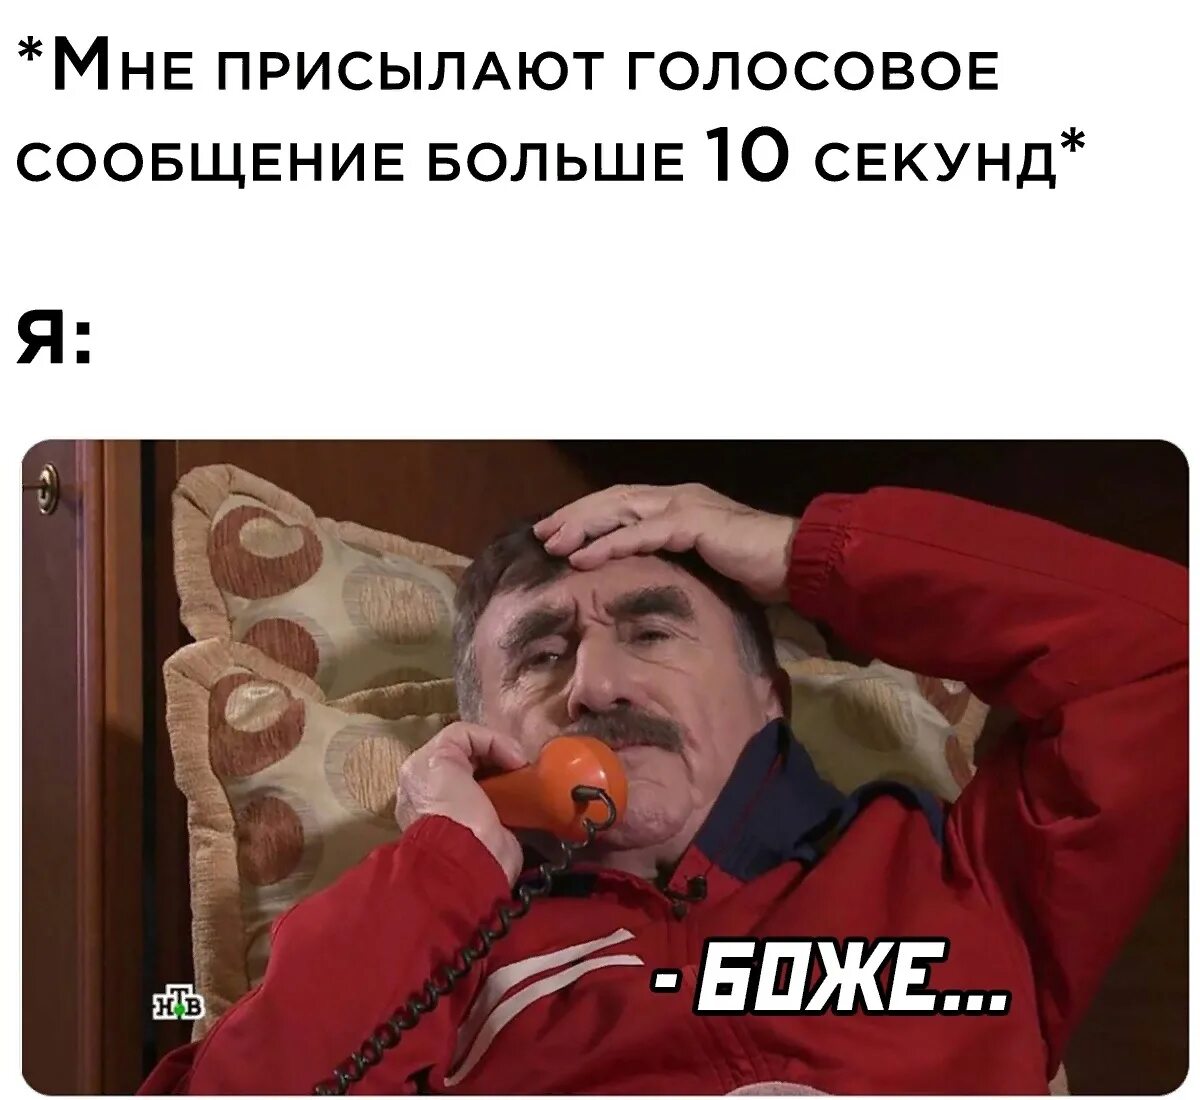 Коневский мемы.